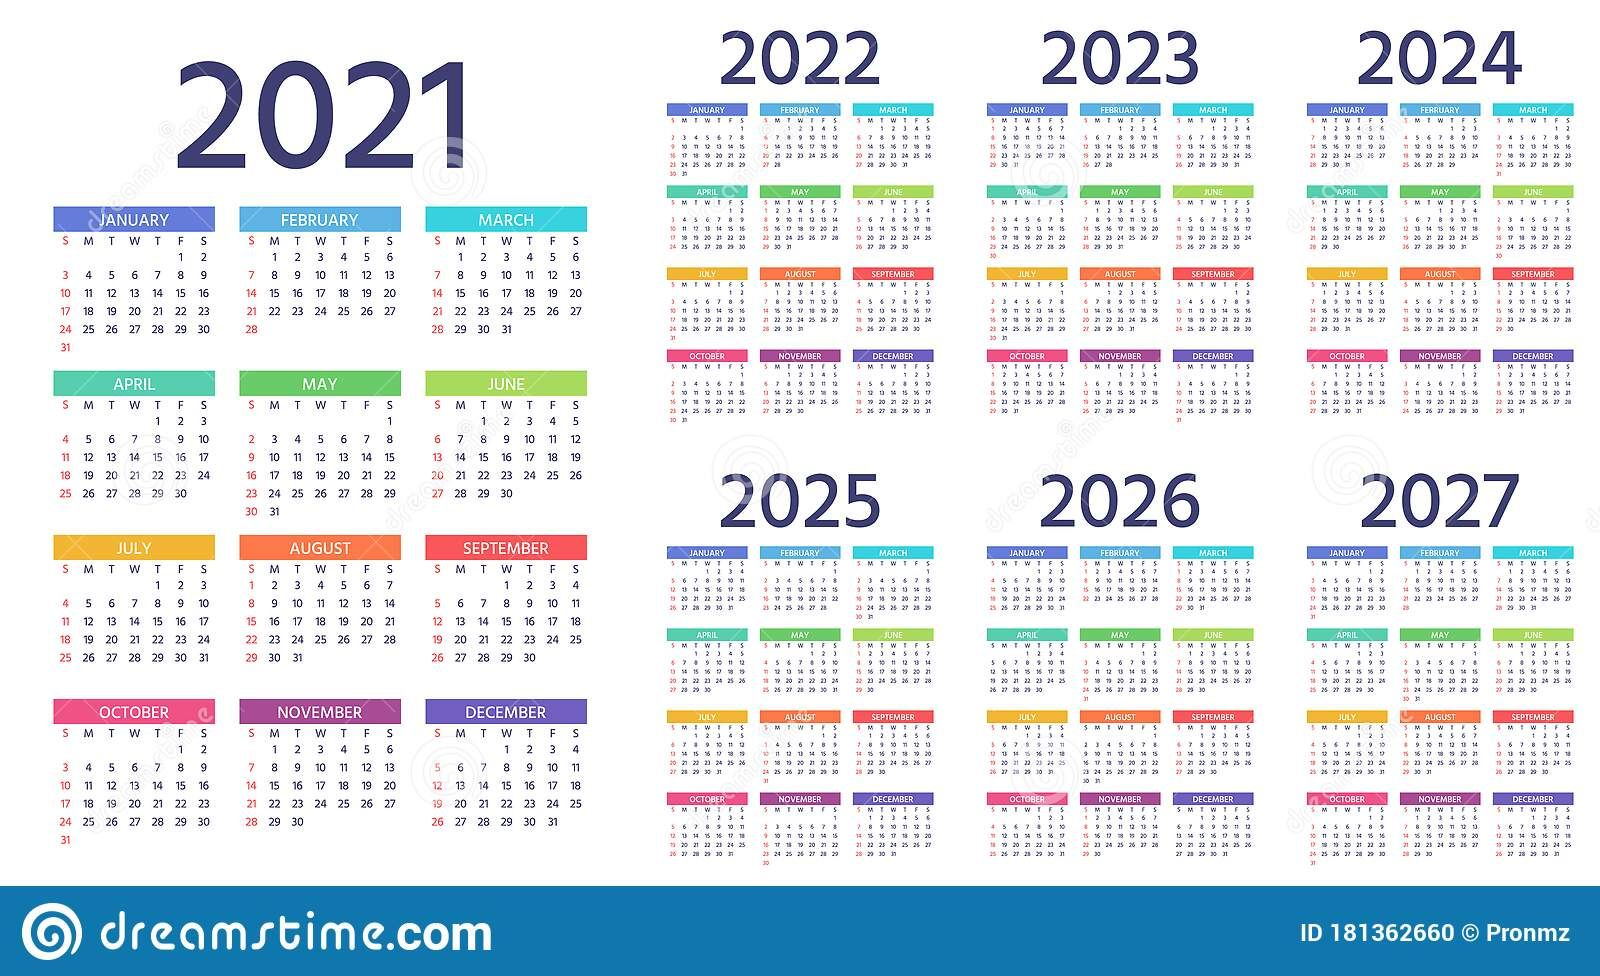 2024 Almanac Calendar 2024 Calendar Printable